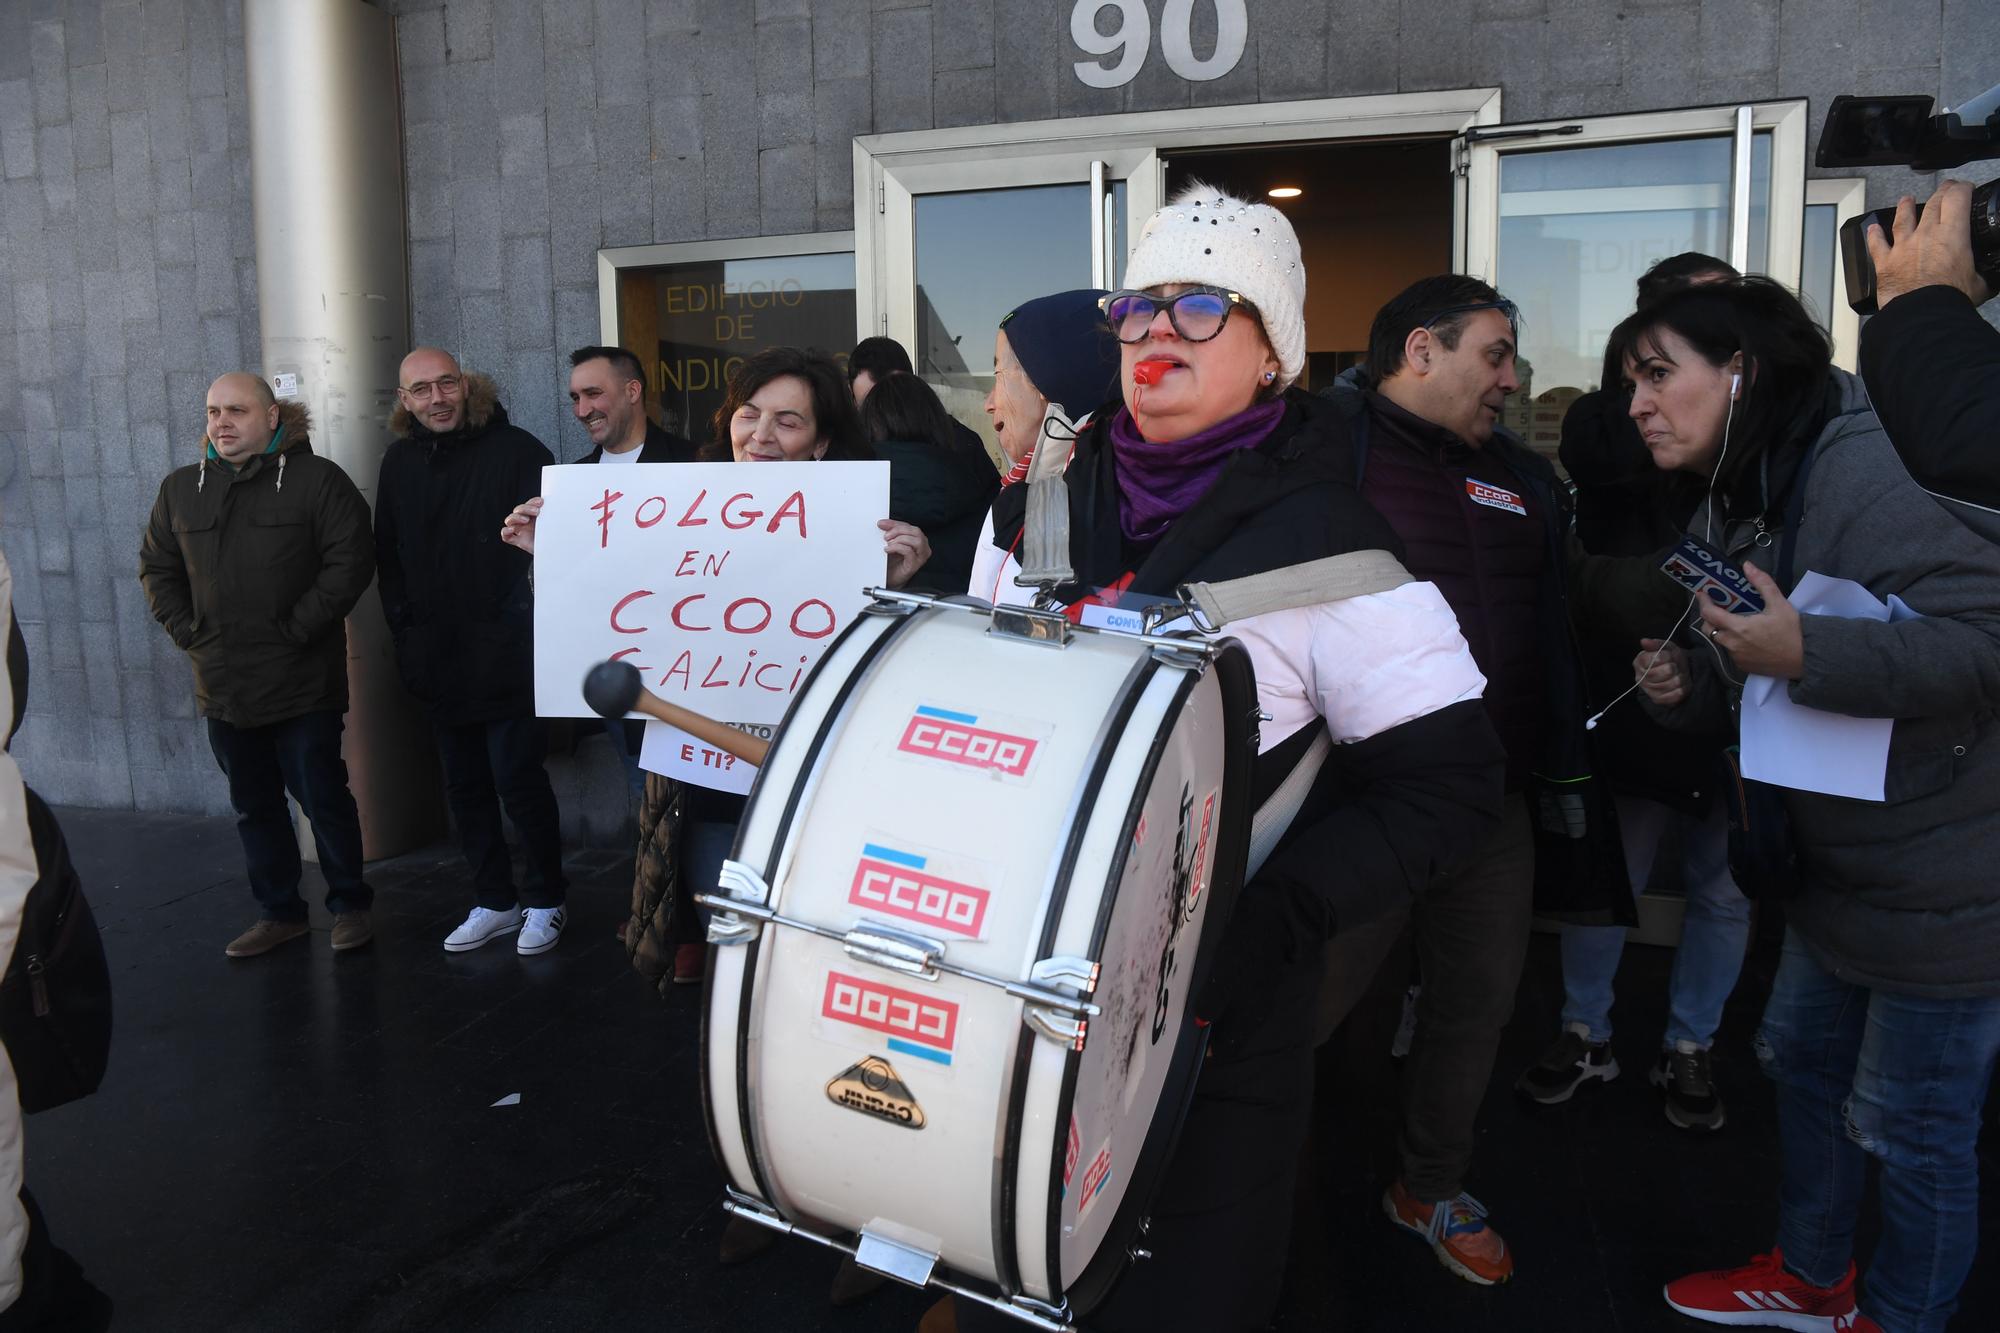 Trabajadores de CCOO en Galicia inician huelga para pedir aumento salarial